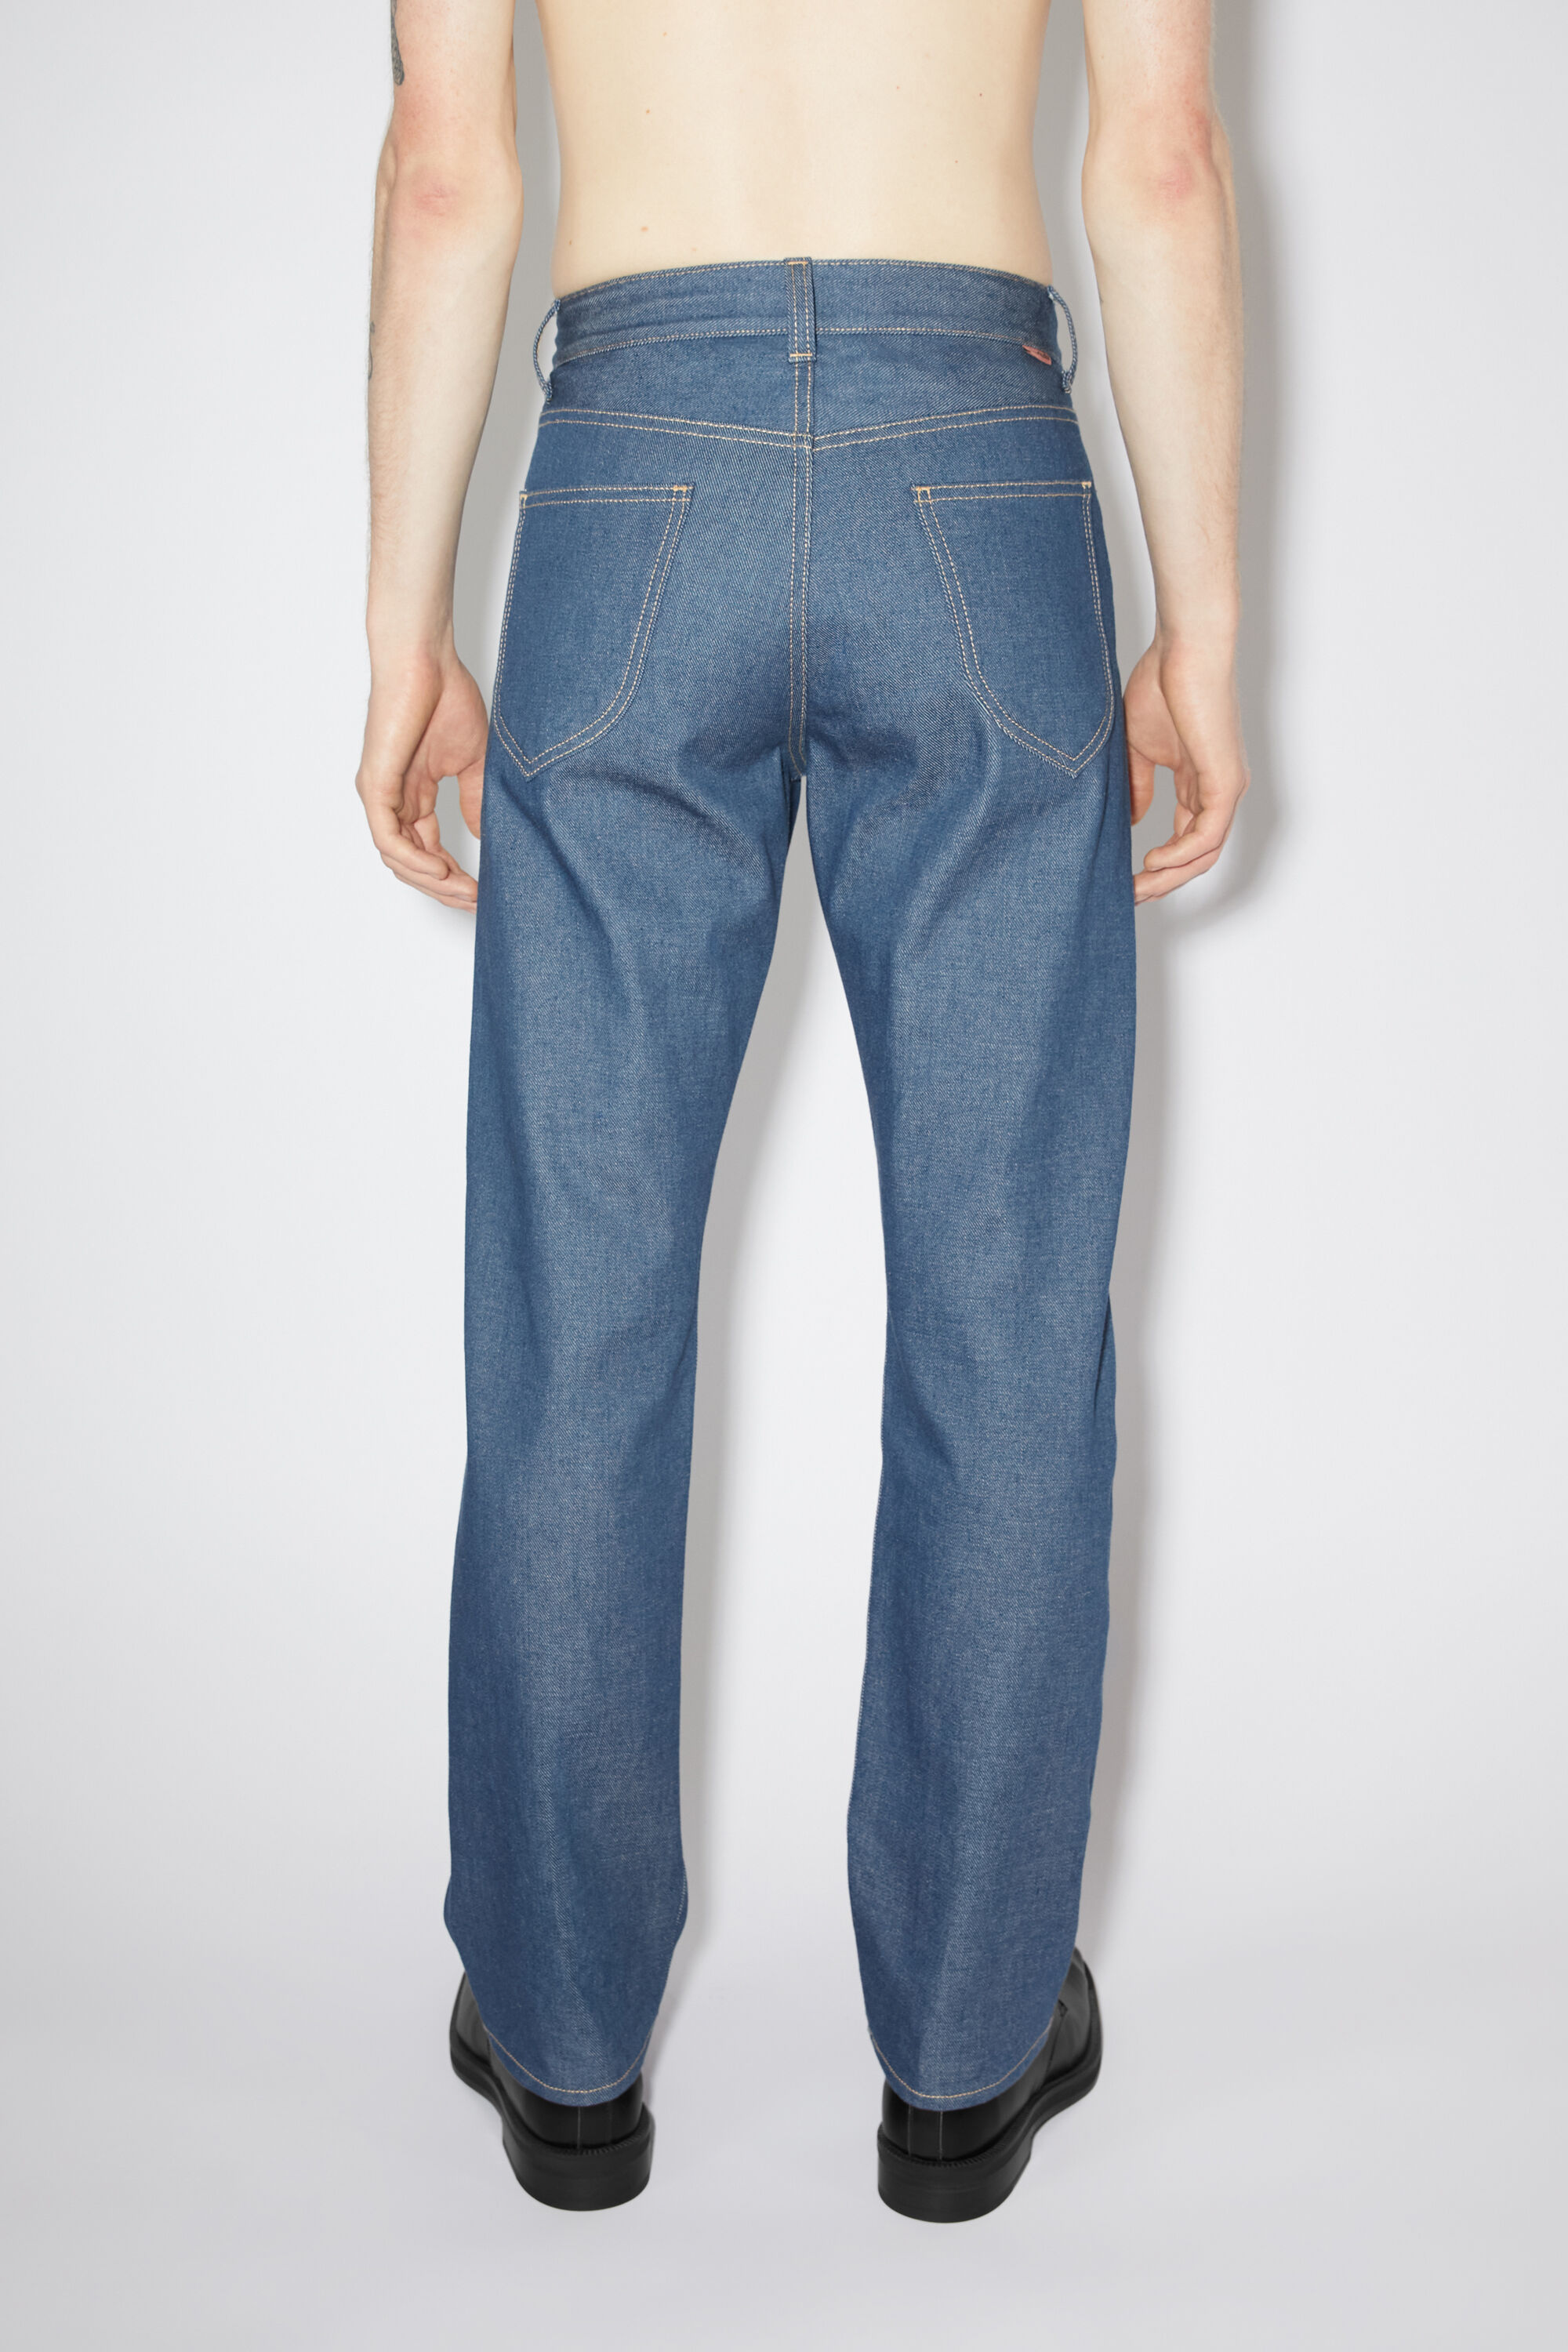 아크네 스튜디오 Acne Studios Regular fit jeans - 1950 - Pale indigo